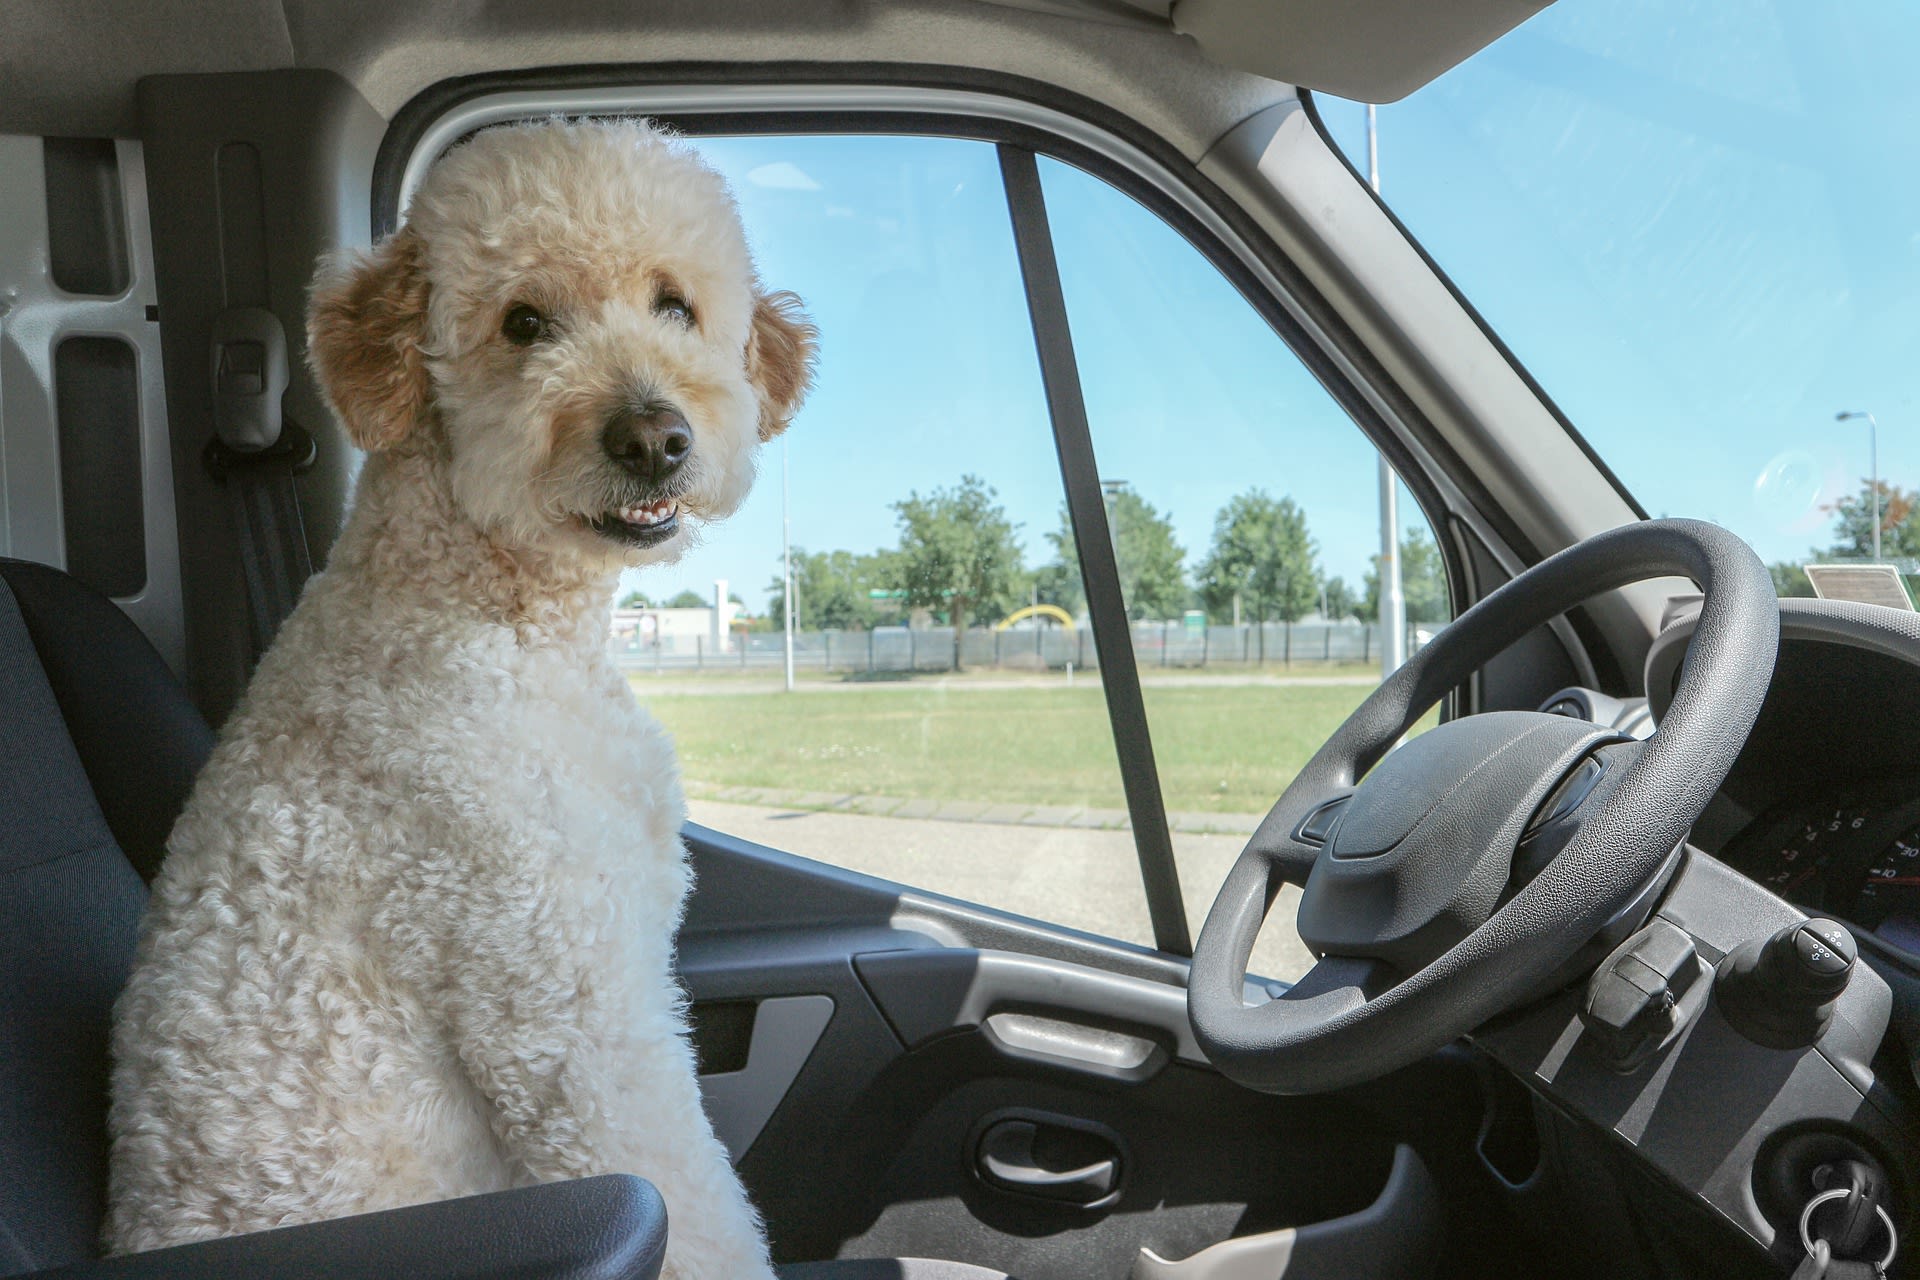 Pes za volantem může způsobit mnoho neplechy